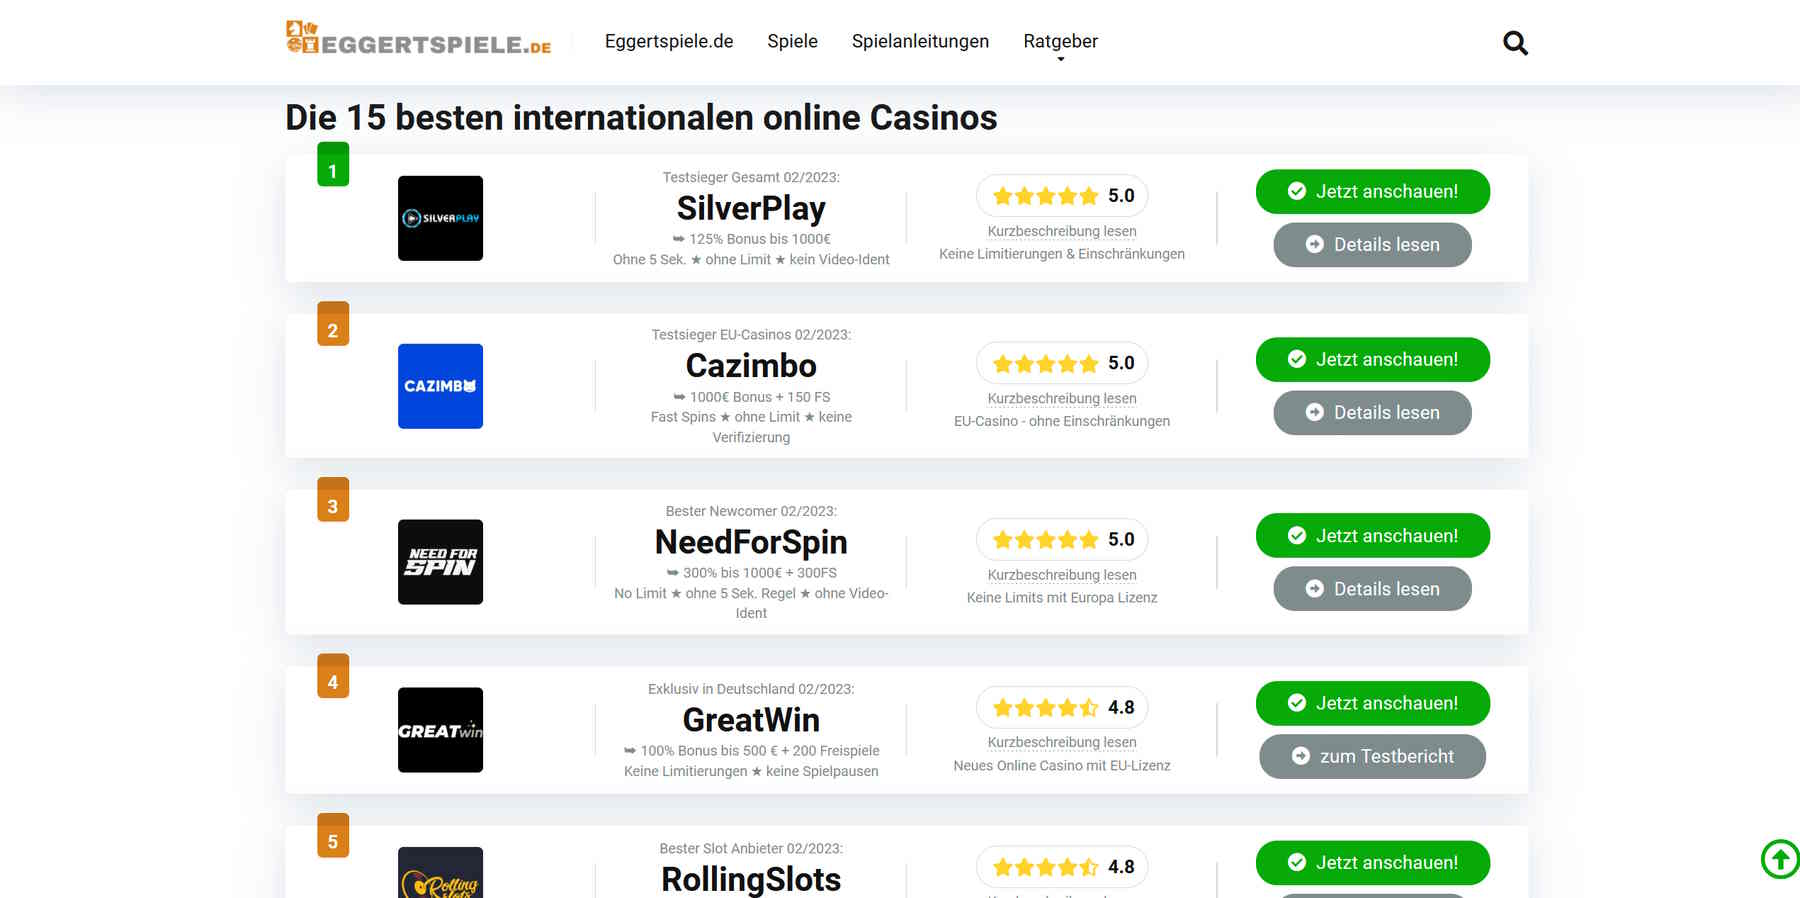 die besten internationalen Online Casinos